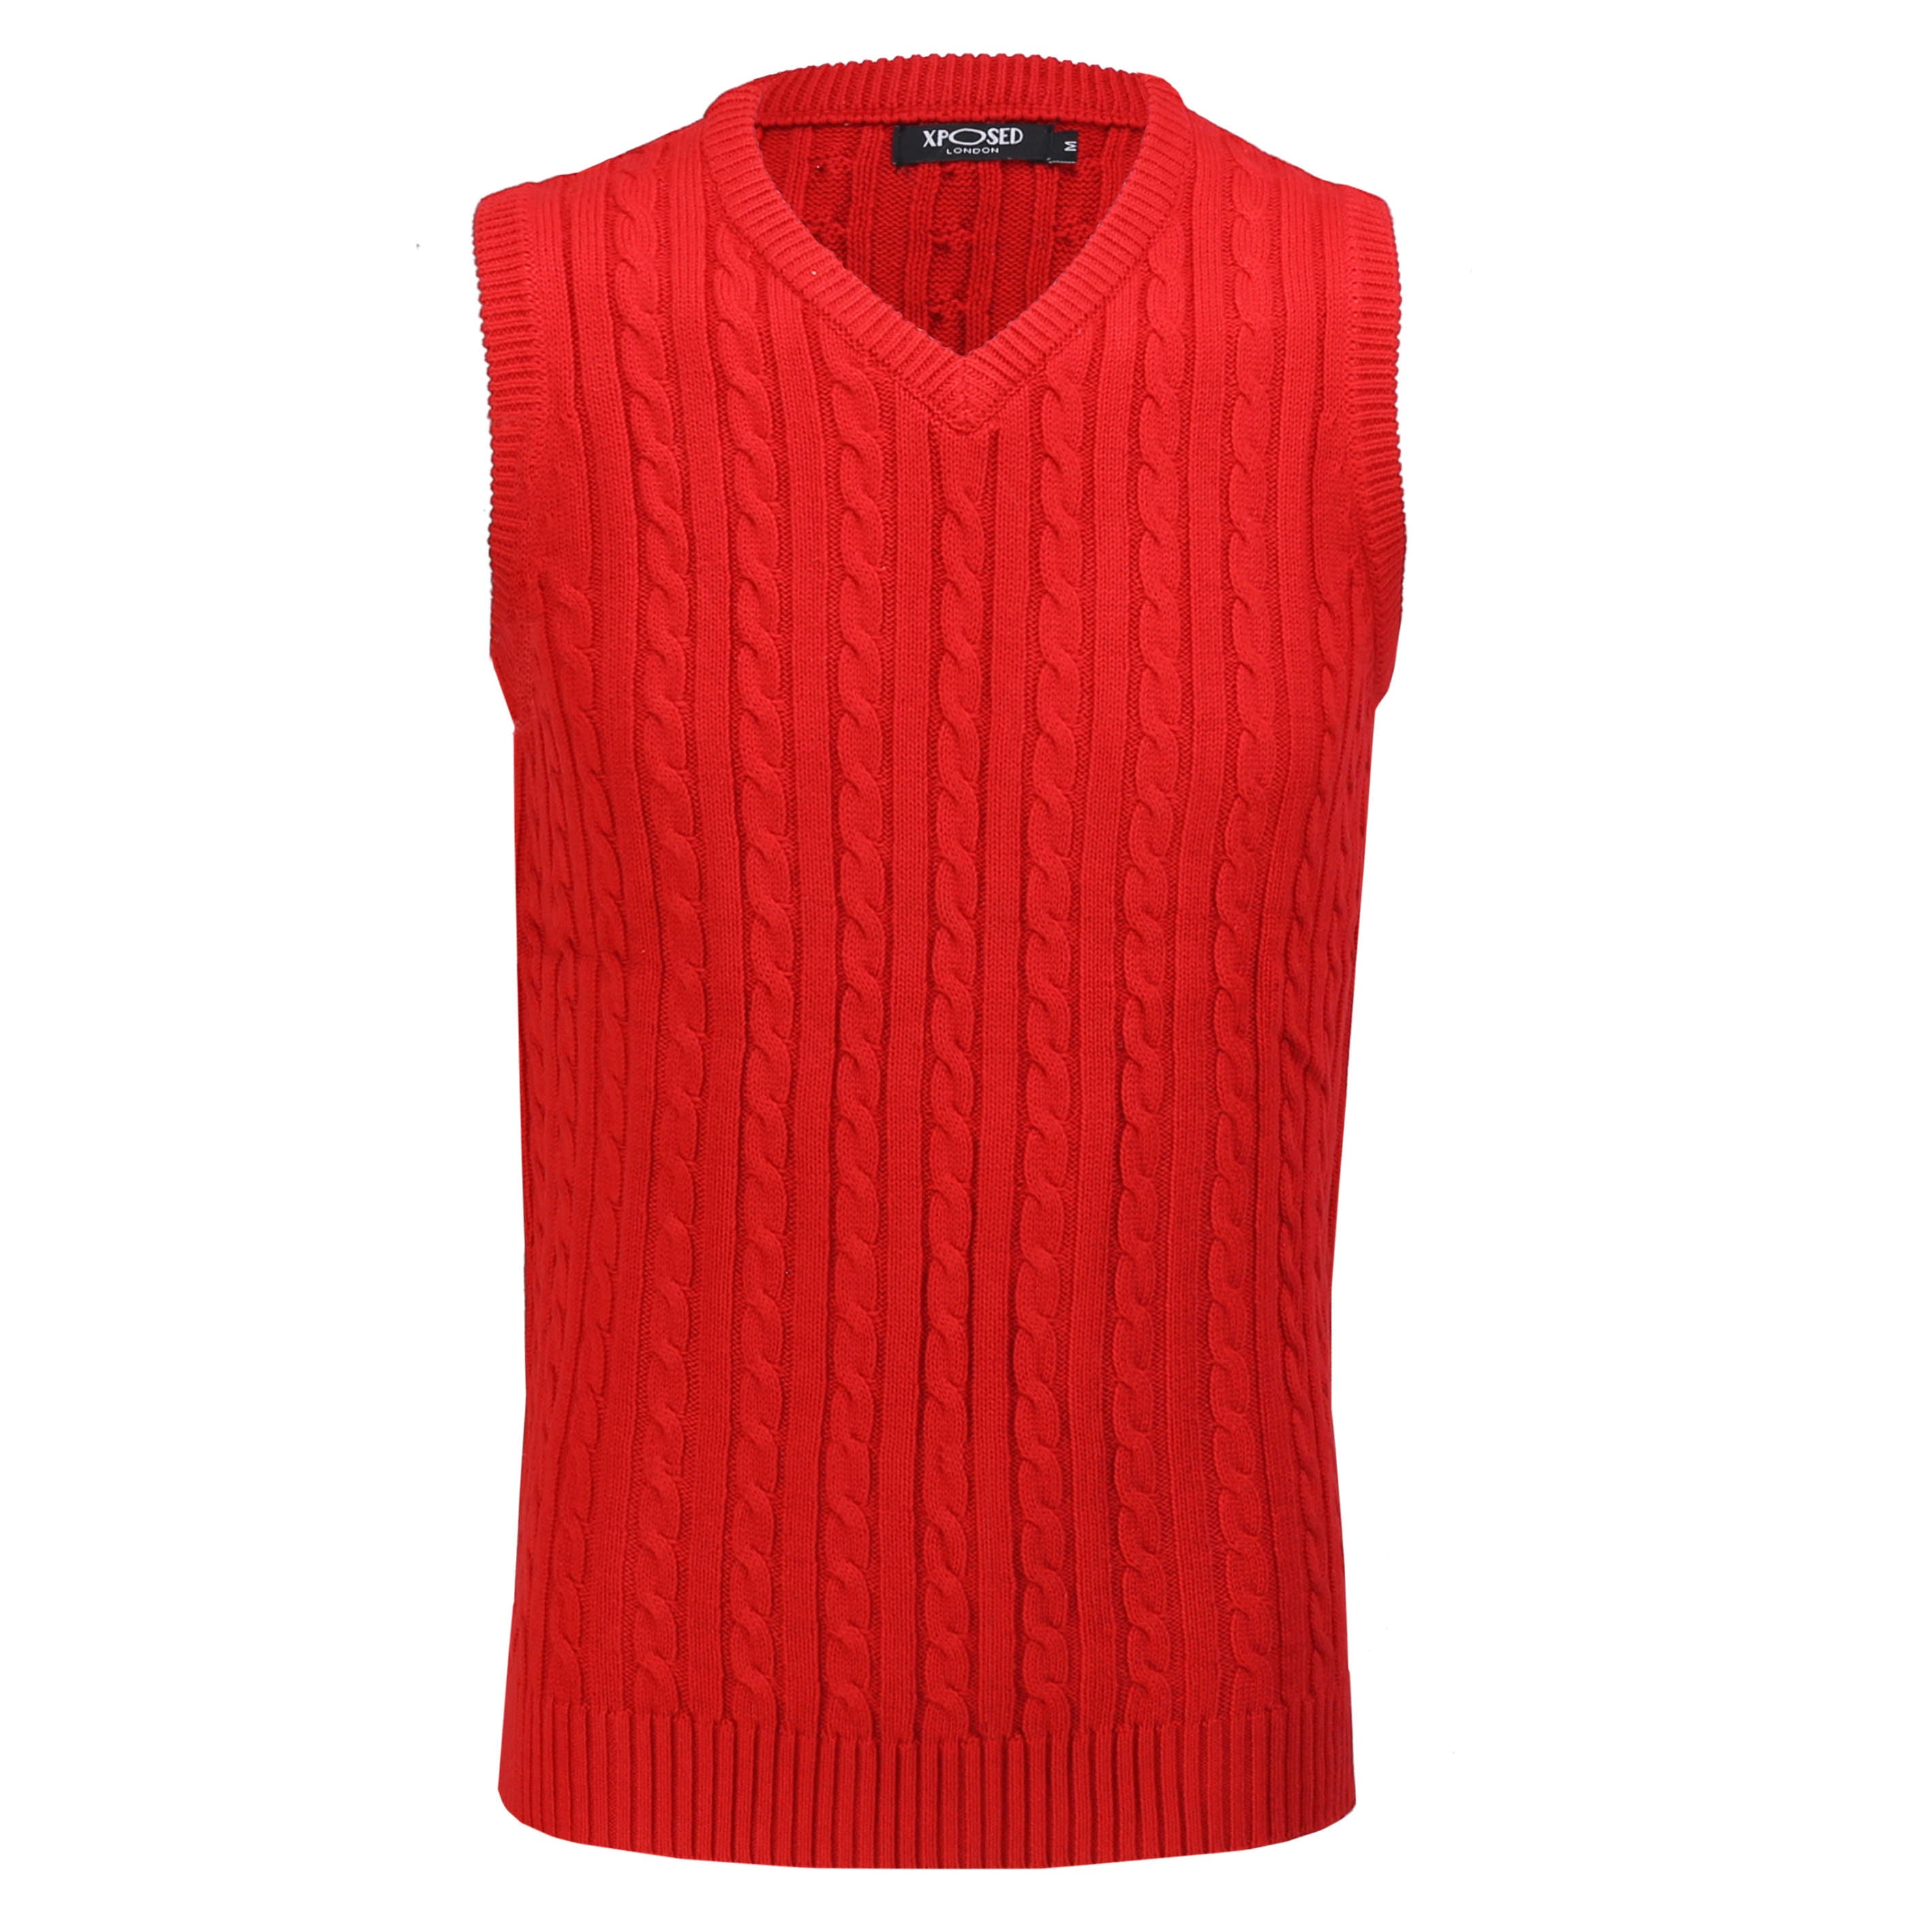 Mens Classic Knitted Sleeveless V Neck Red Jumper